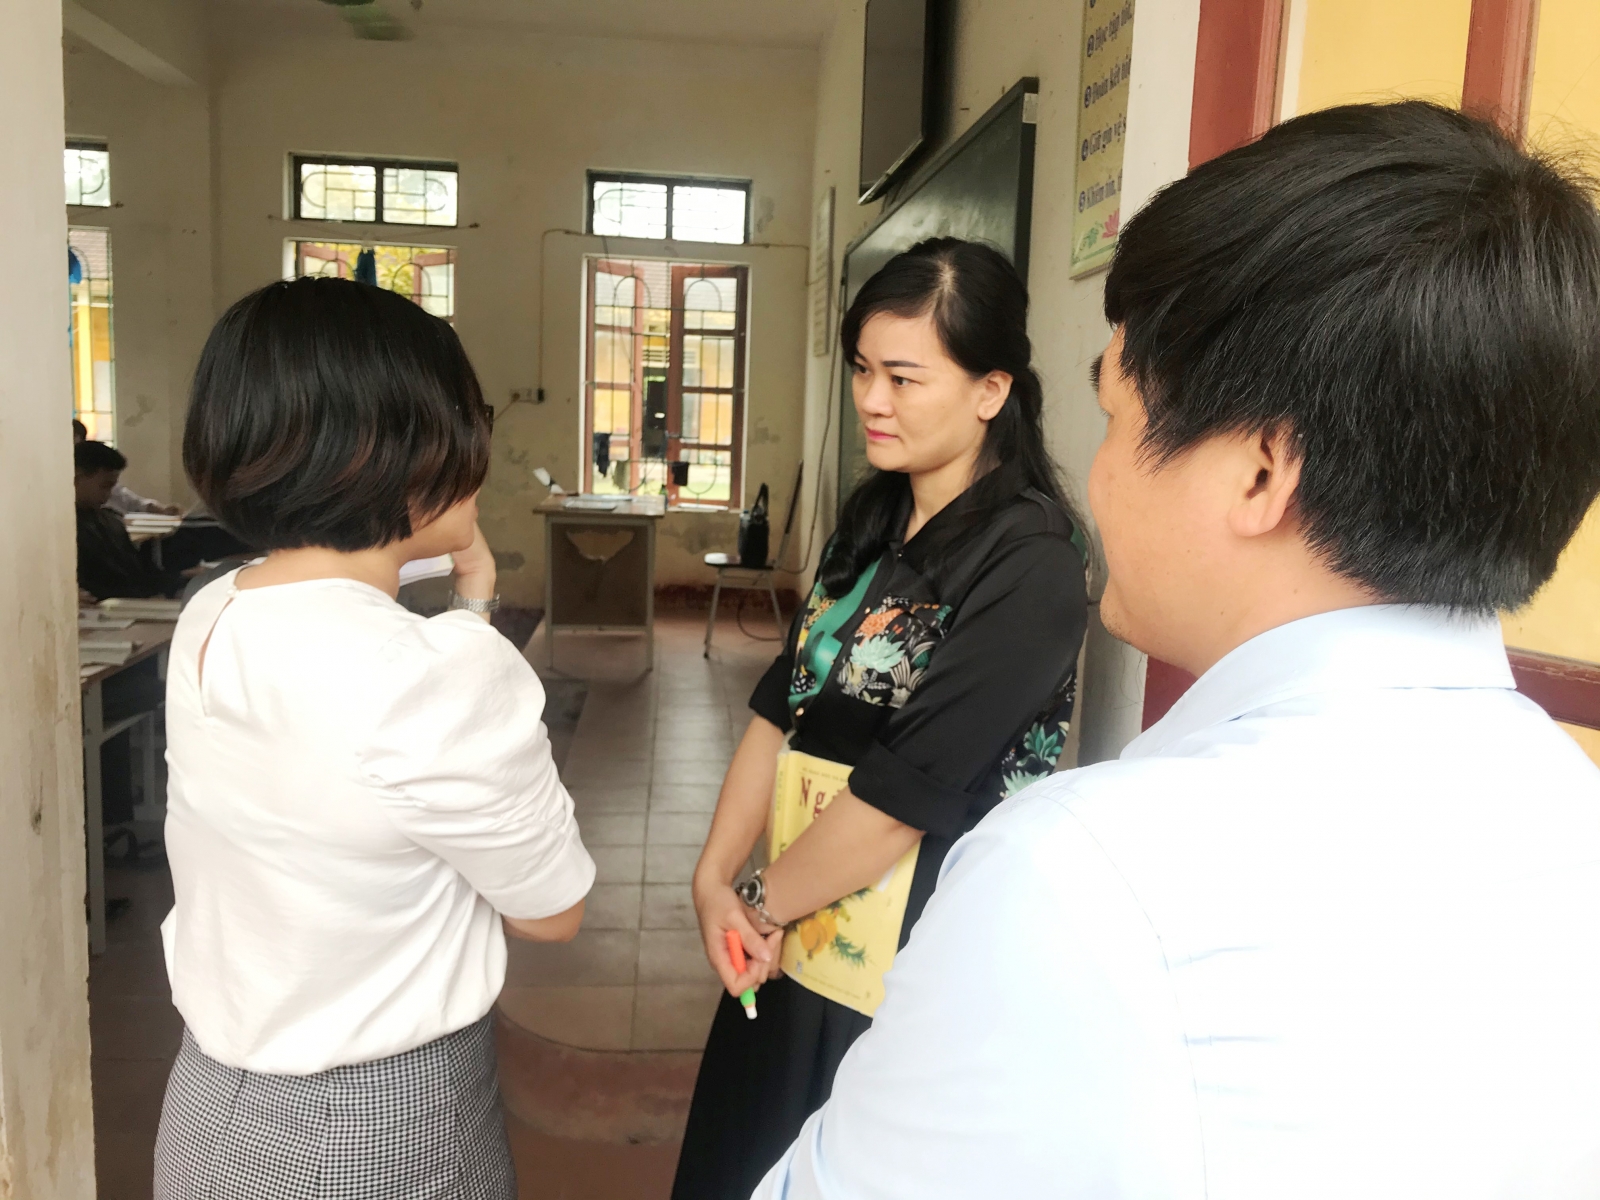 Chức danh nghề nghiệp giáo viên Hà Tĩnh: Tăng lương ít nhất từ 0,01% trở lên - Ảnh minh hoạ 3